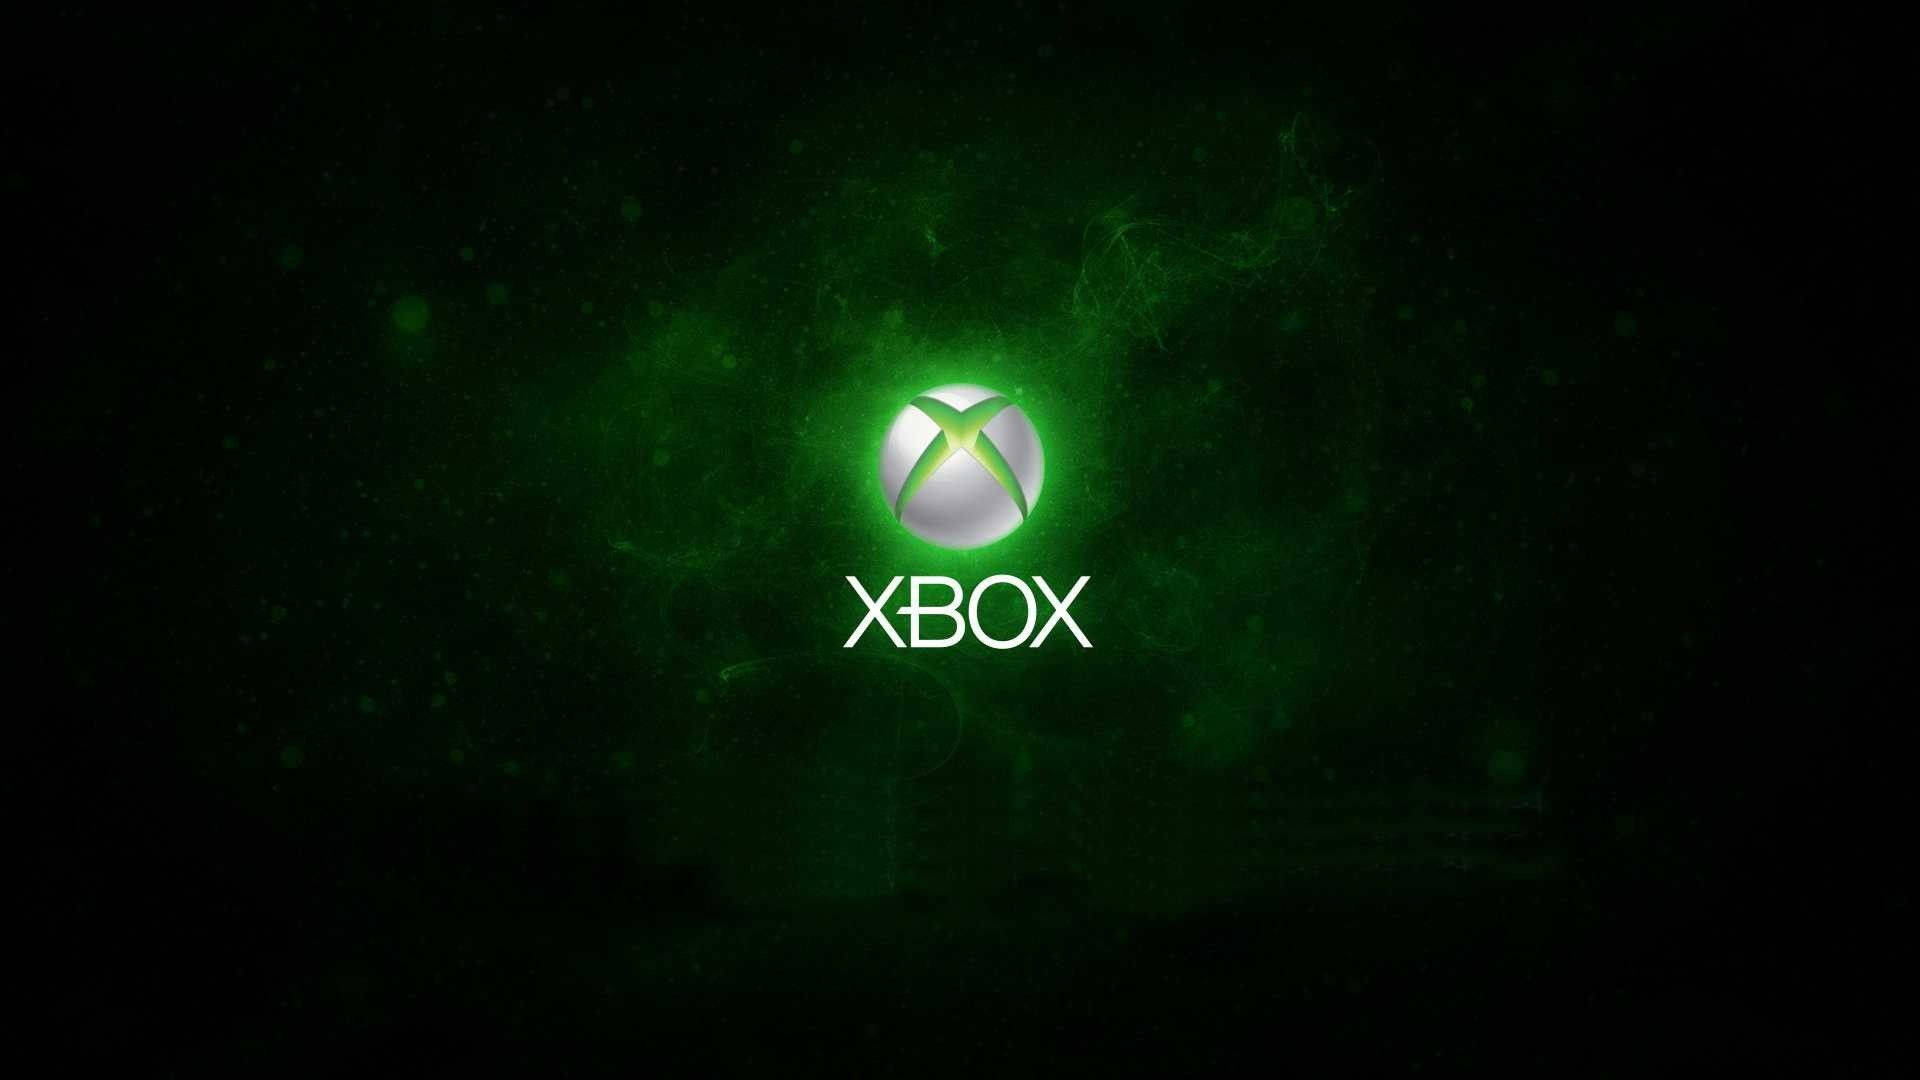 Xboxone X-logotyp I Grönt. Wallpaper